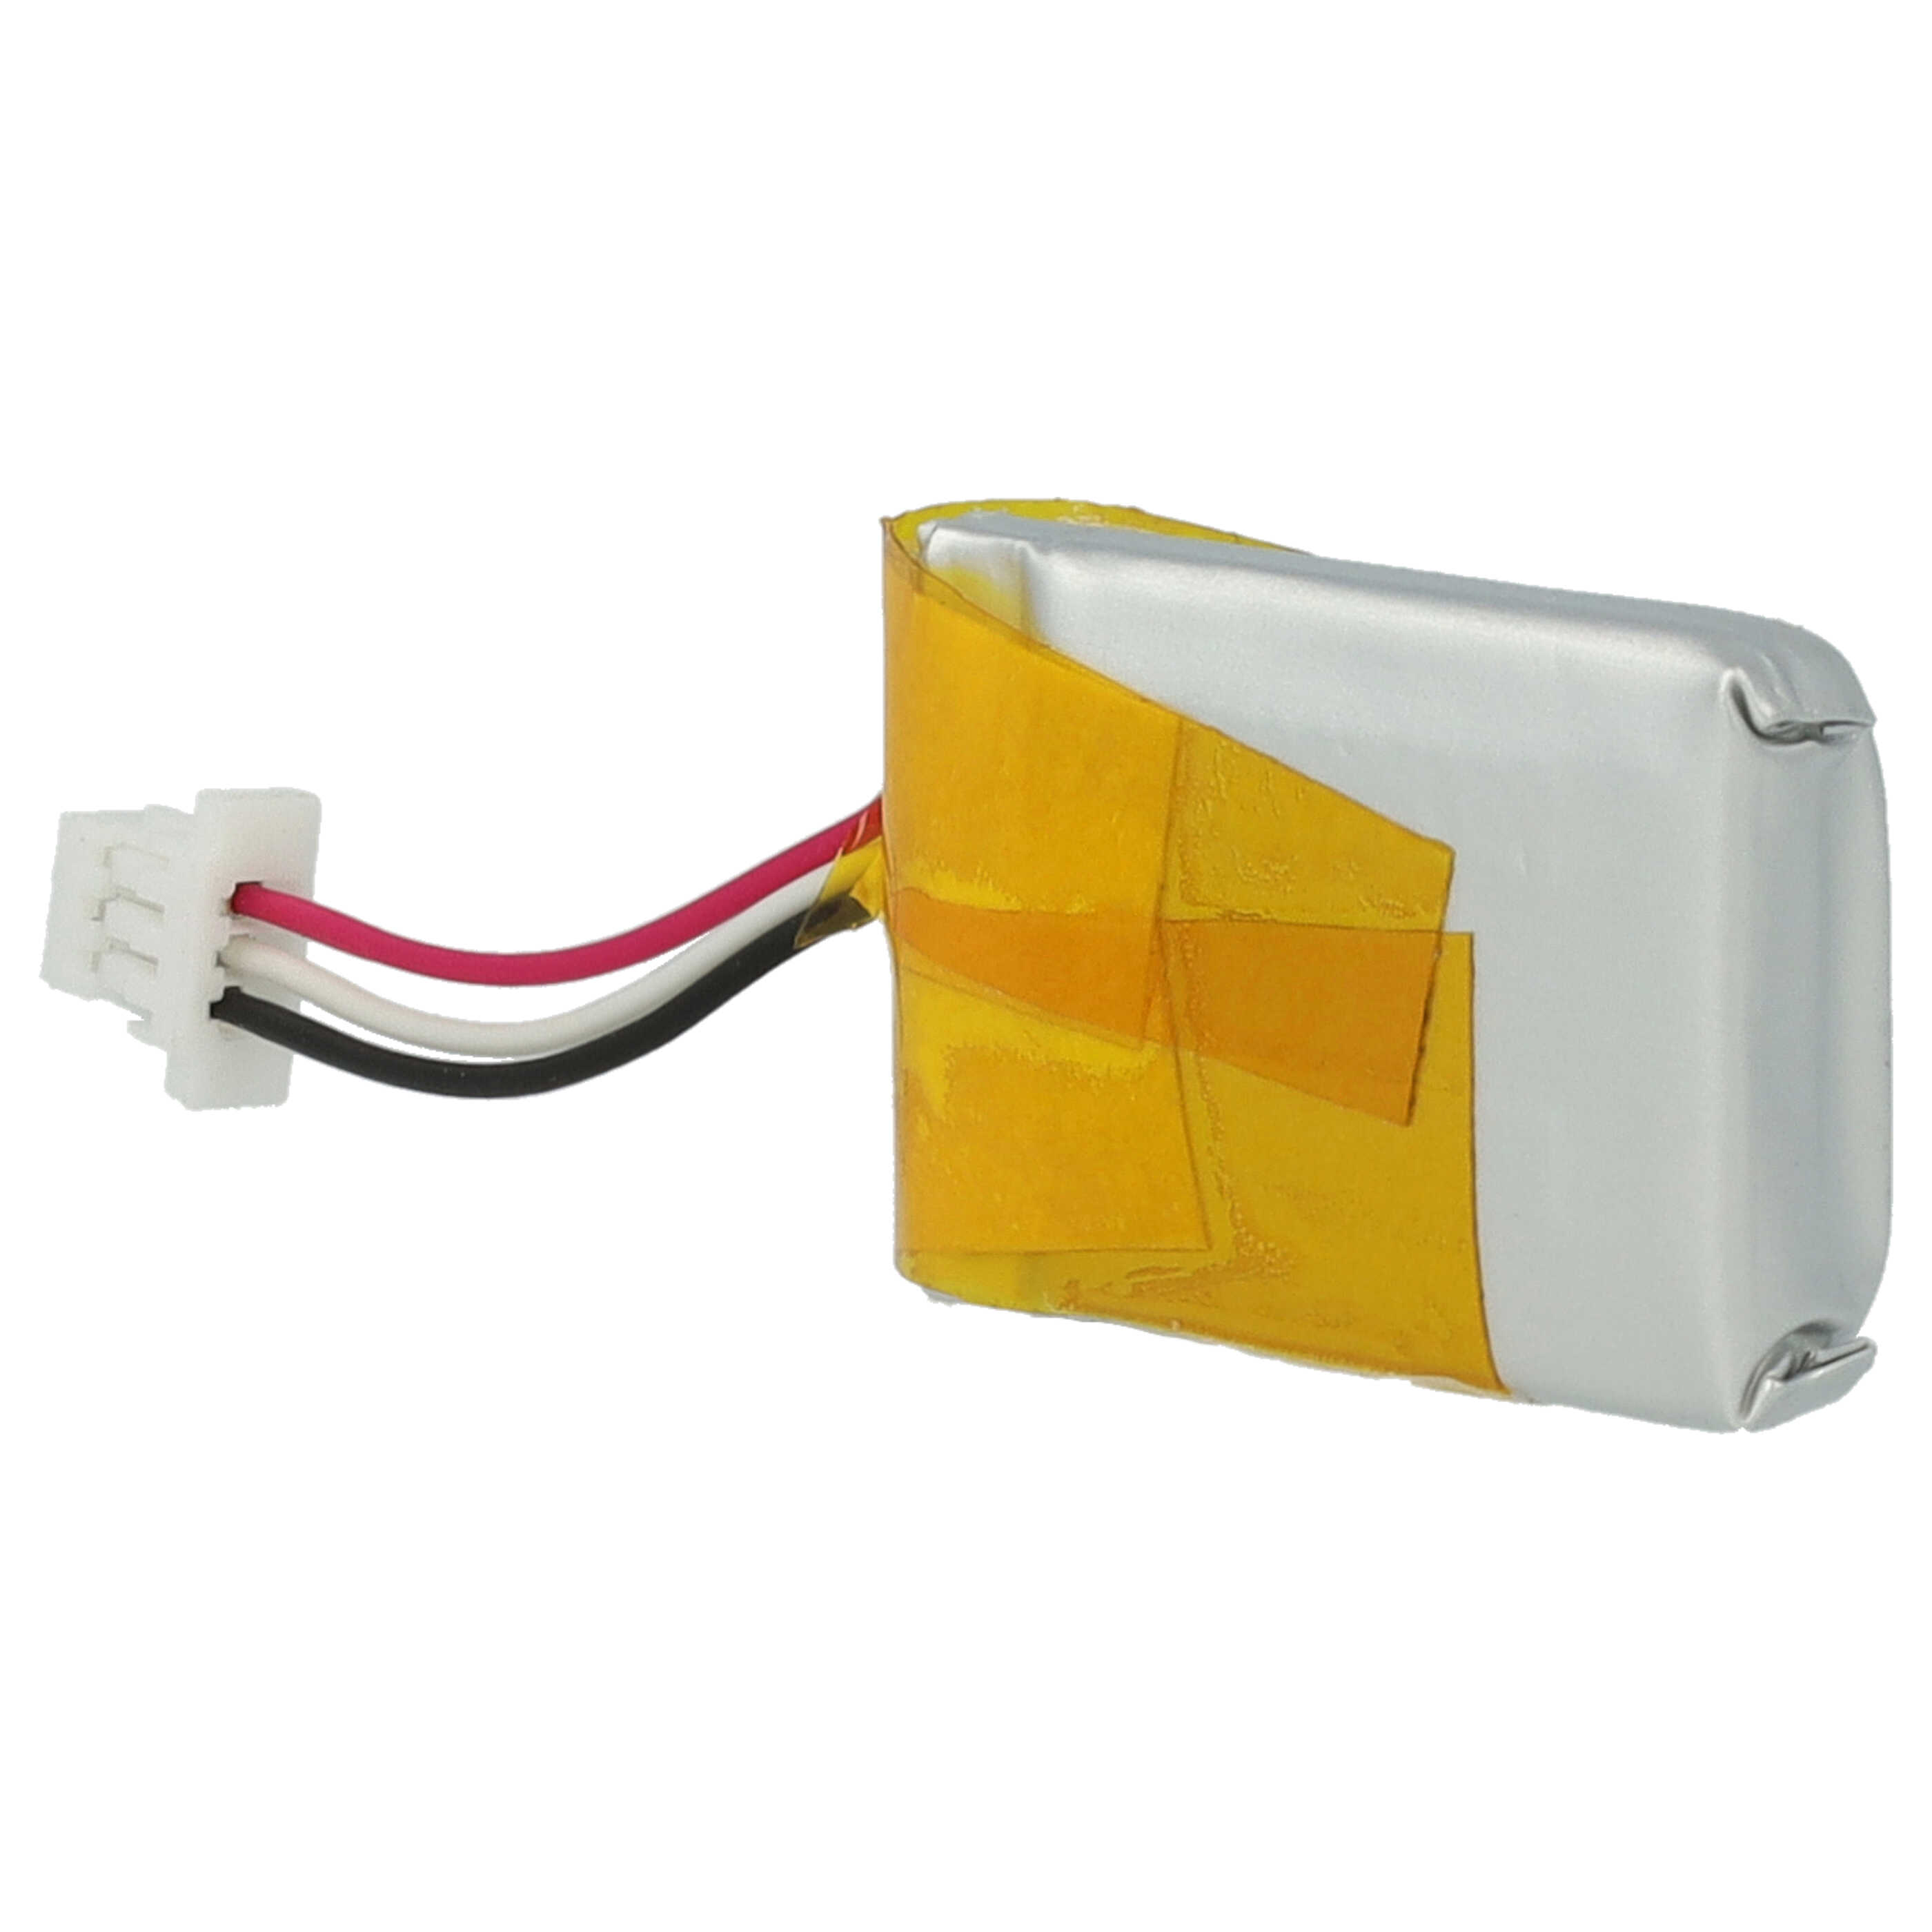 Akumulator do słuchawek bezprzewodowych zamiennik Plantronics 212367-01 - 140 mAh 3,7 V LiPo